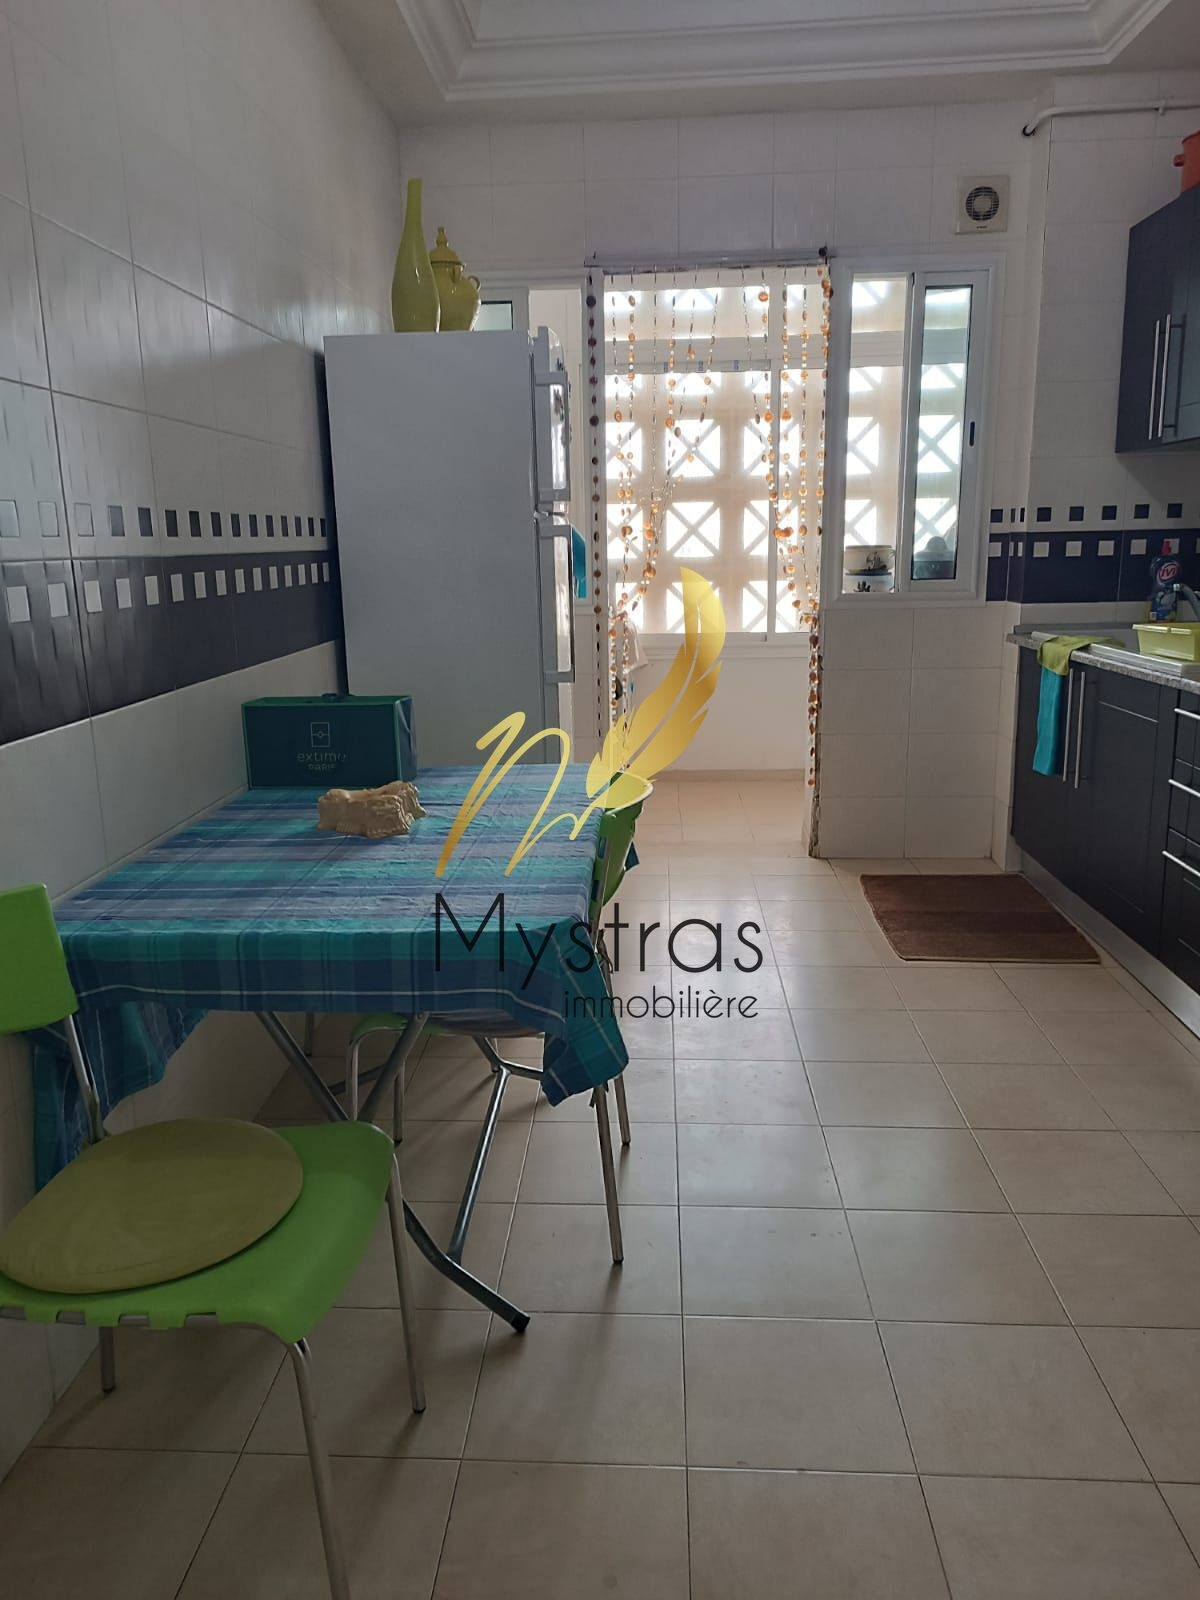 La Marsa El Aouina Location Appart. 3 pices Un appartement s3 meubl  l aouina